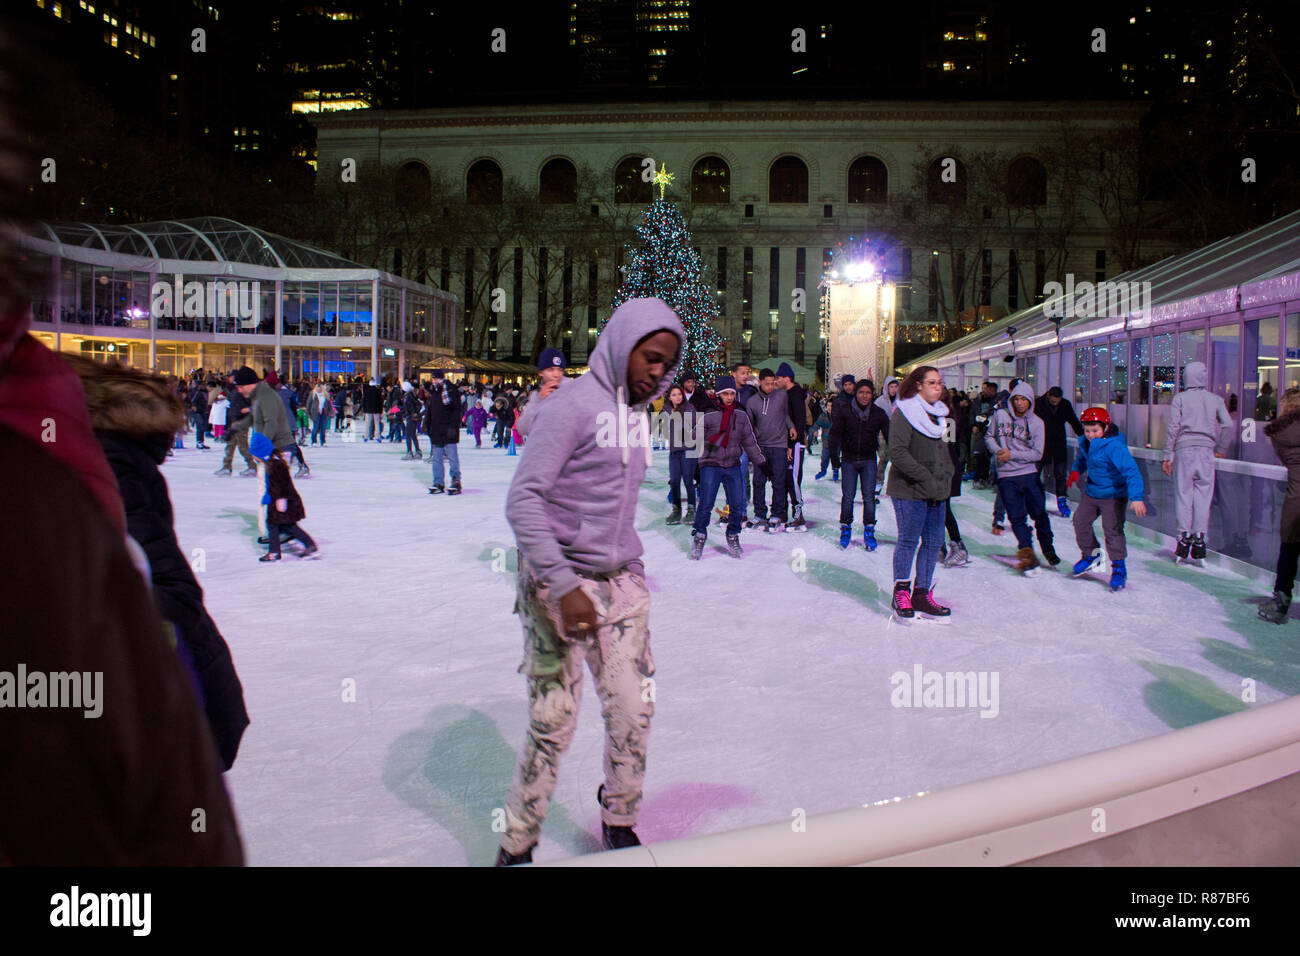 Citi Teich Eislaufbahn am Bryant Park in Manhattan mit Weihnachtsbaum auf dem Display. Leute Eislaufen in der Eissporthalle am Bryant Park in New York City. Stockfoto